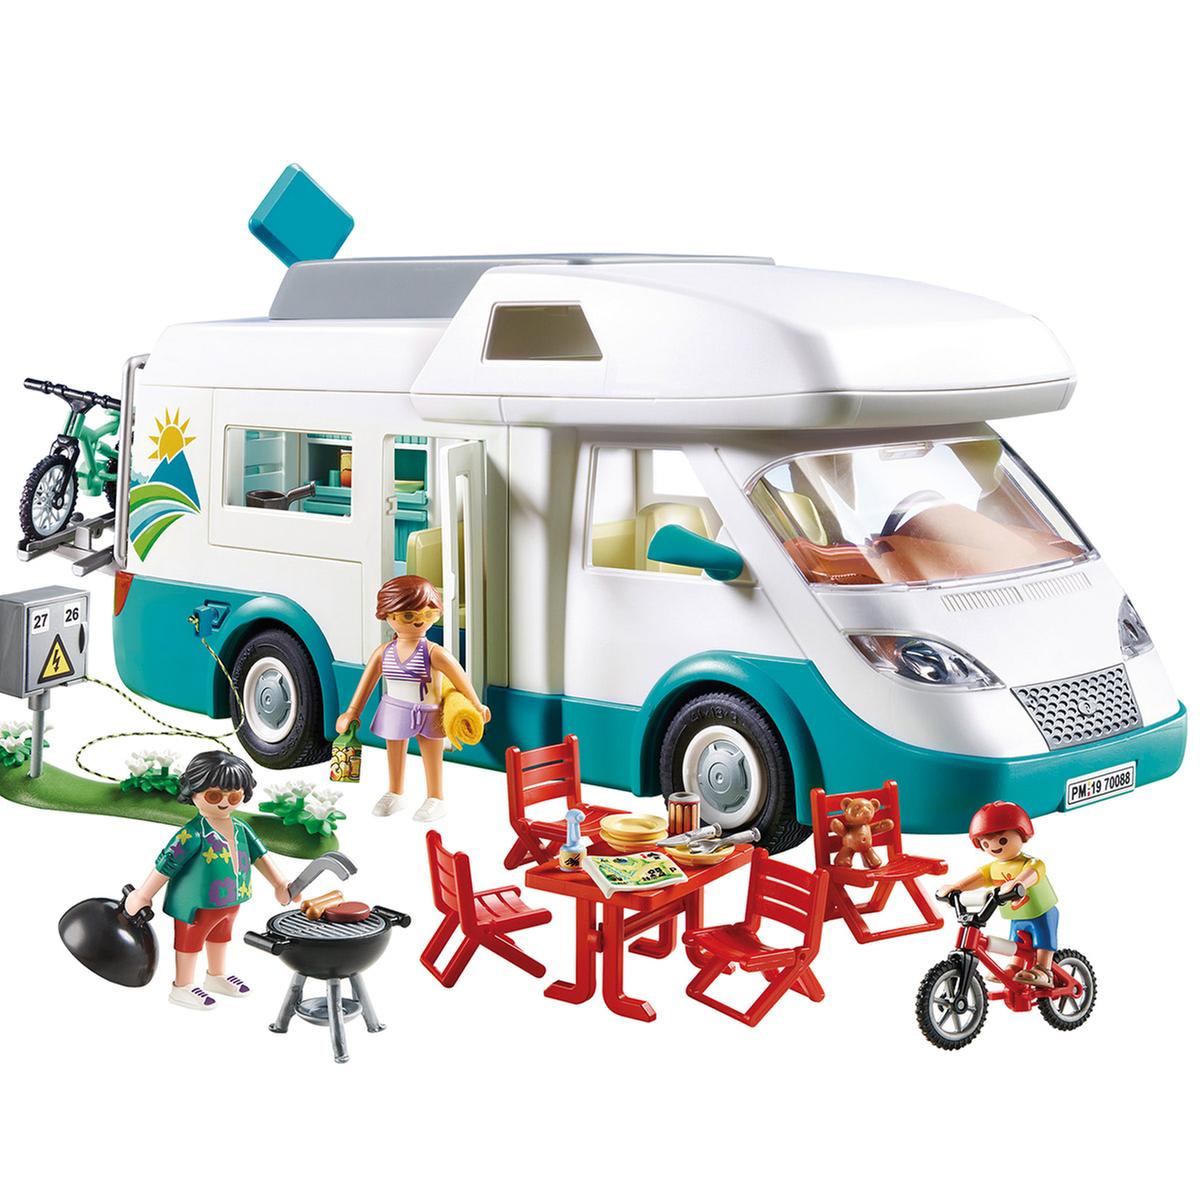 Medicina Saco Biblioteca troncal Playmobil - Caravana de verano - 70088 | Residencia Vacacional Y Vacaciones  | Toys"R"Us España